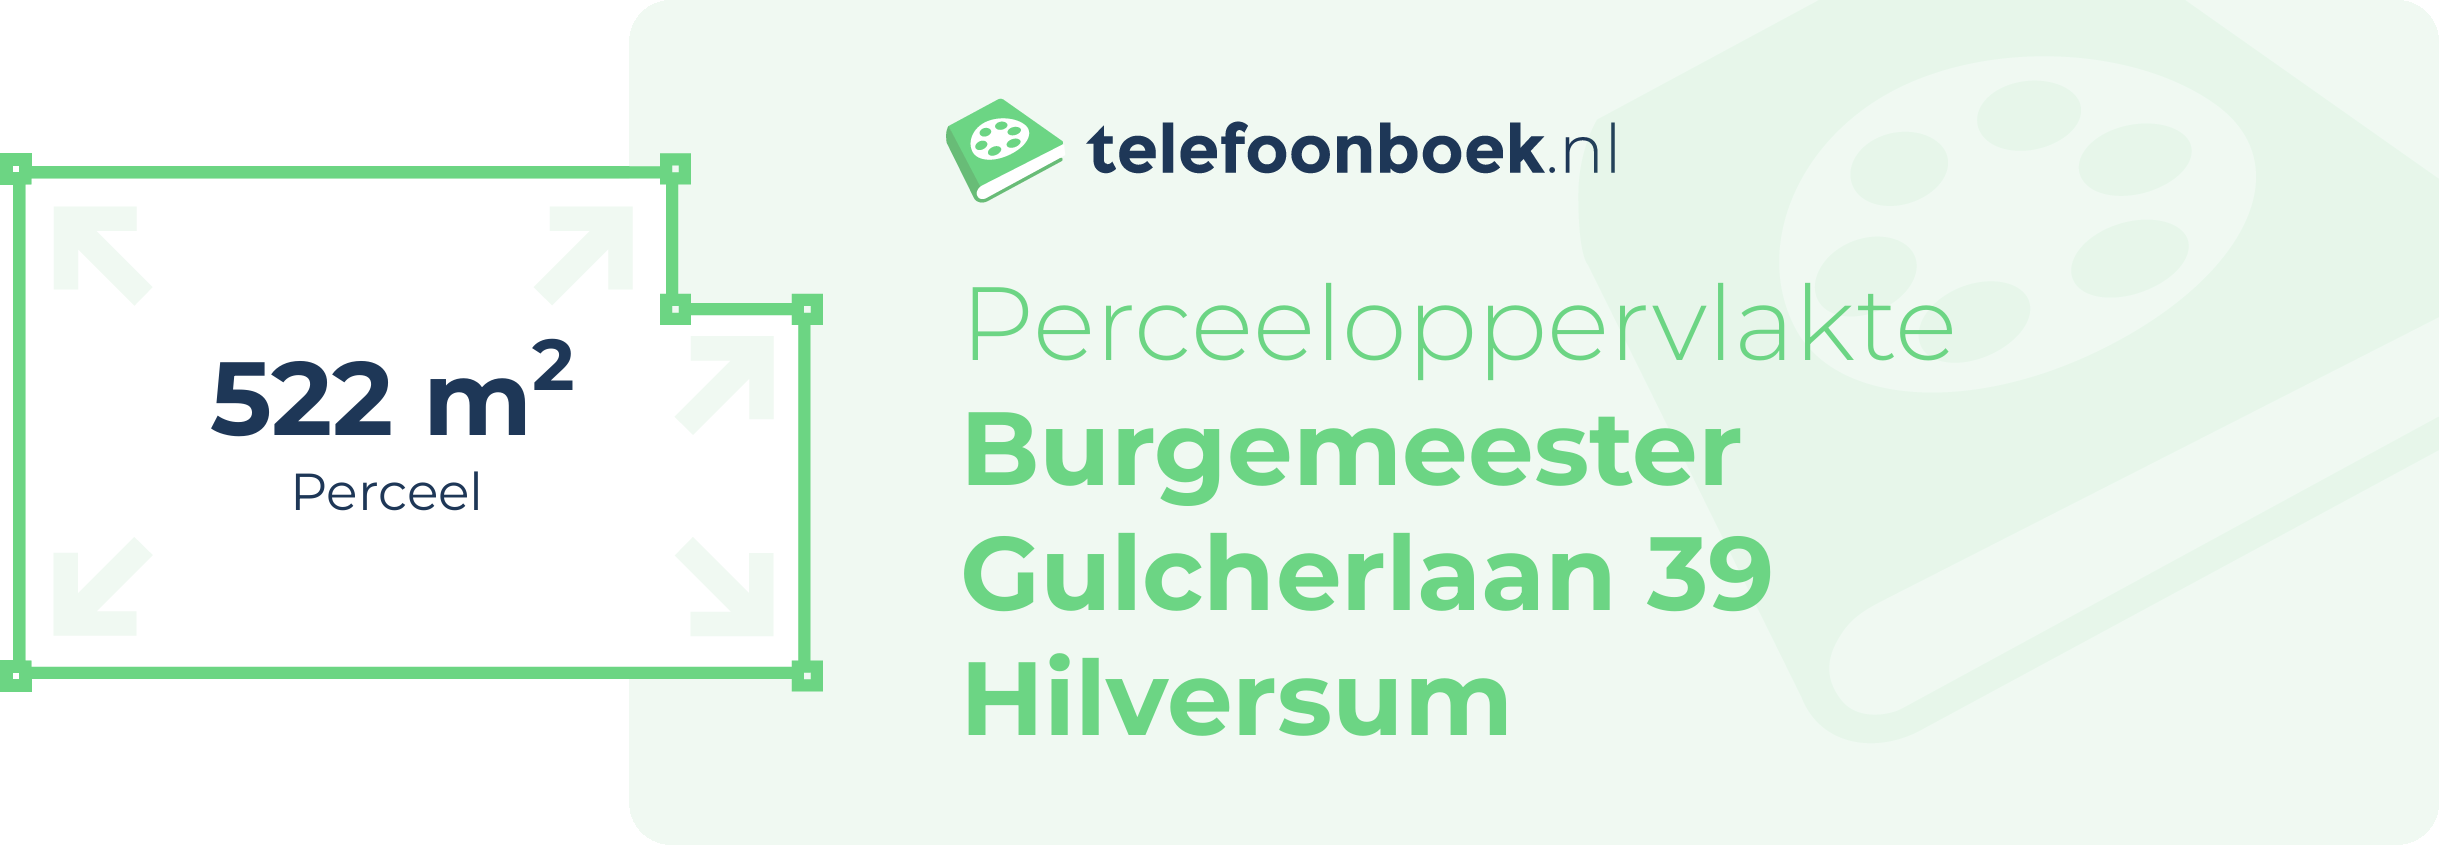 Perceeloppervlakte Burgemeester Gulcherlaan 39 Hilversum